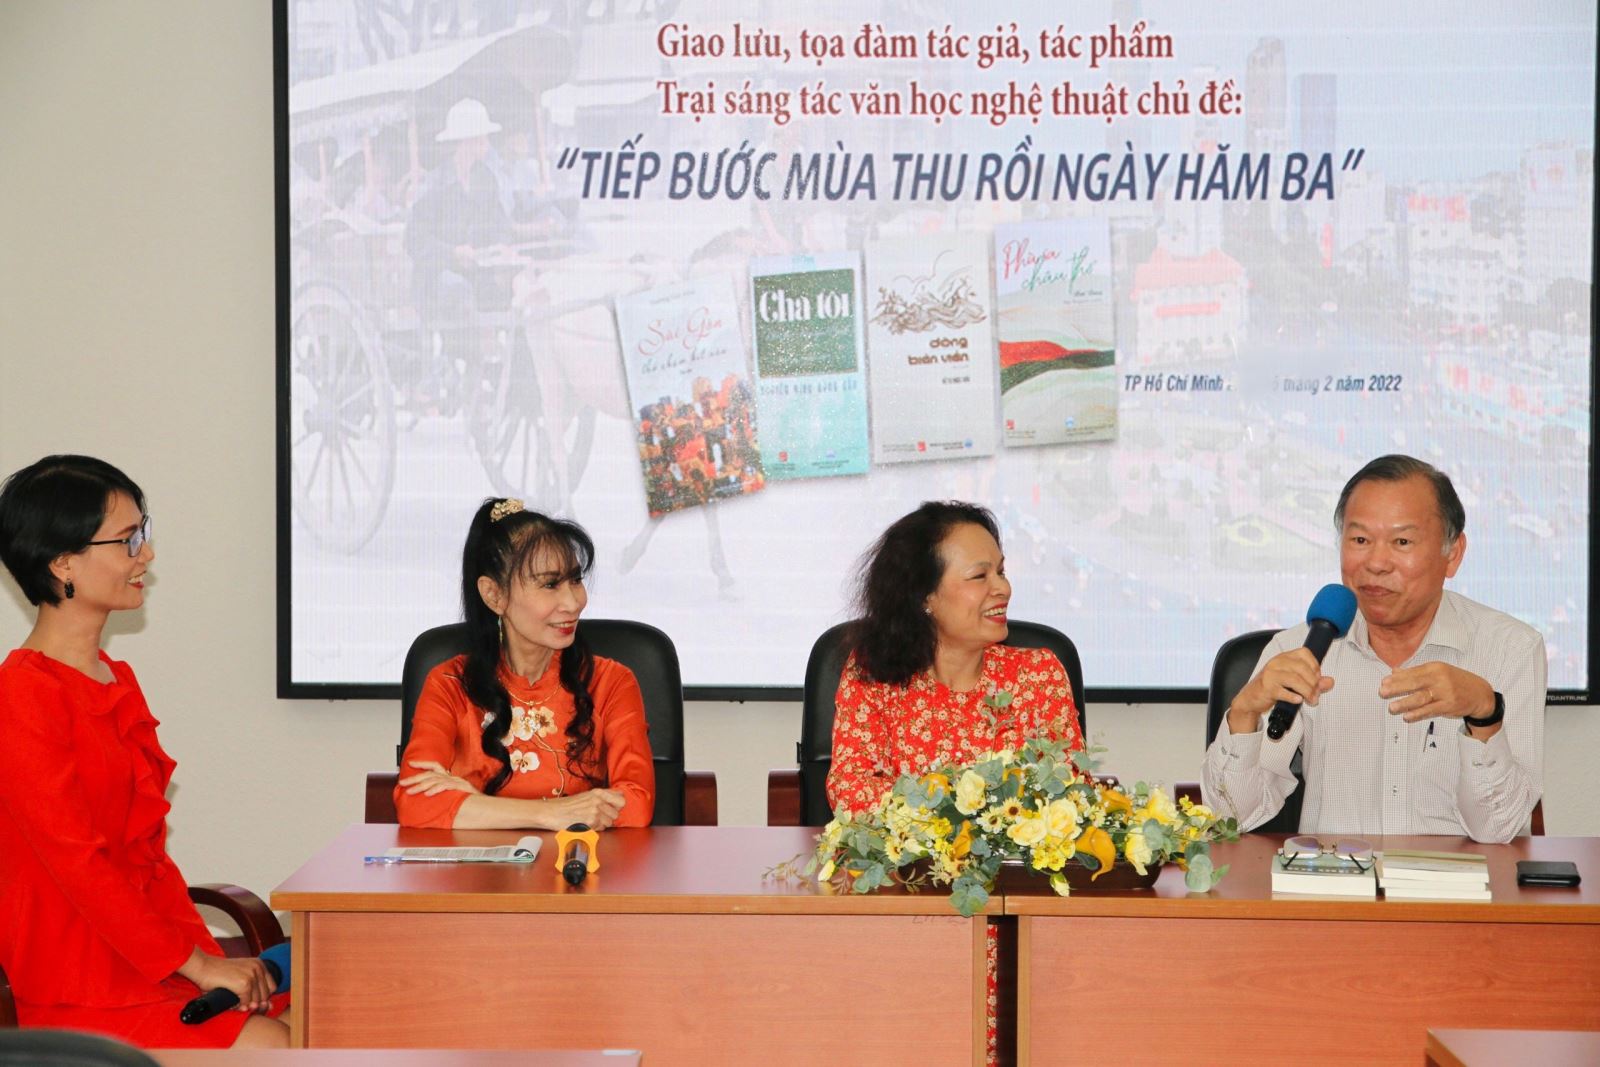 Liên hiệp các Hội Văn học - Nghệ thuật TP Hồ Chí Minh tổ chức chương trình giao lưu ra mắt sách “Tiếp bước mùa thu rồi ngày hăm ba”, giới thiệu 4 tác phẩm của 4 nữ nhà văn nữ TP Hồ Chí Minh